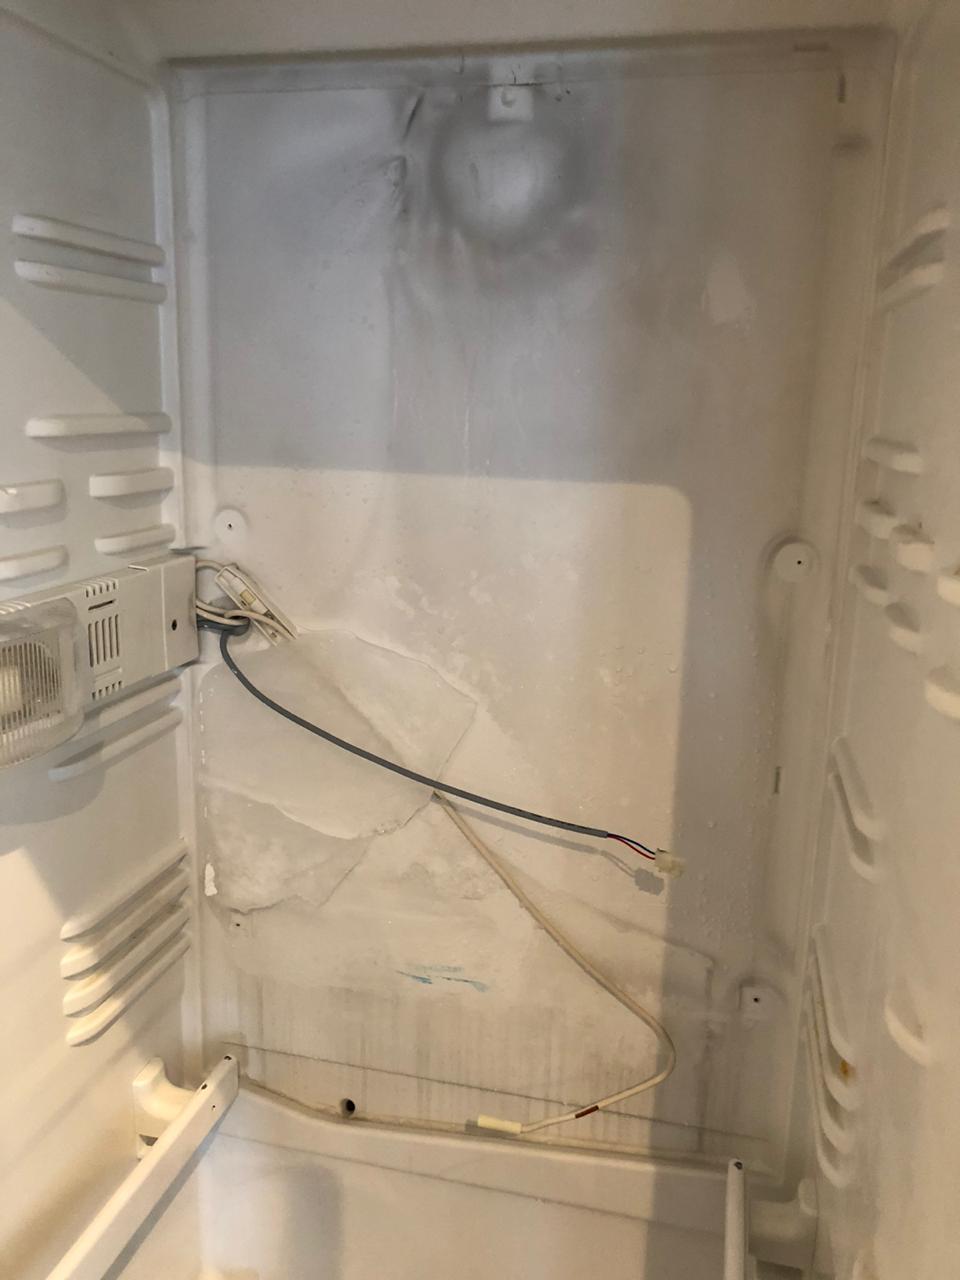 Задняя стенка холодильника намерзает: 9 причин, почему намерзает лед и снег на задней стенке холодильника, что делать? Советы мастера